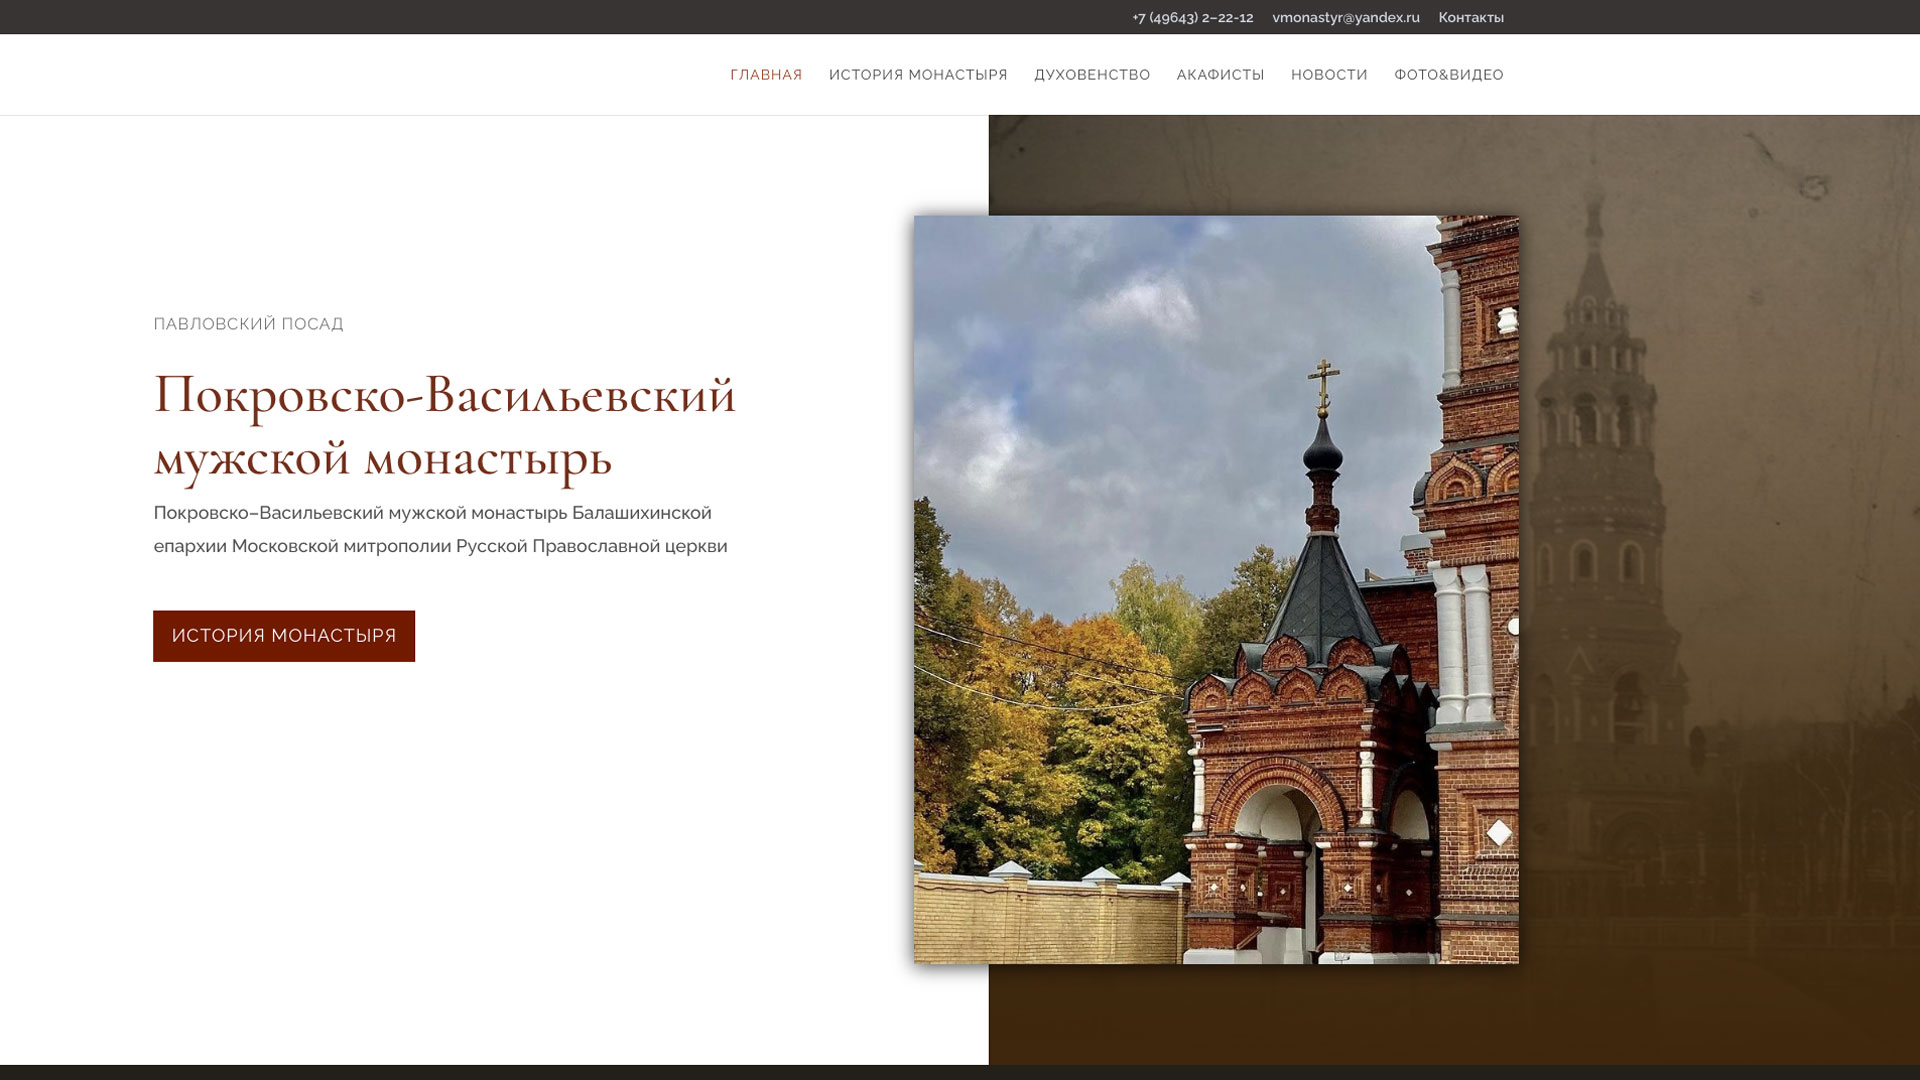 Официальный сайт Покровско-Васильевского<br />
мужского монастя